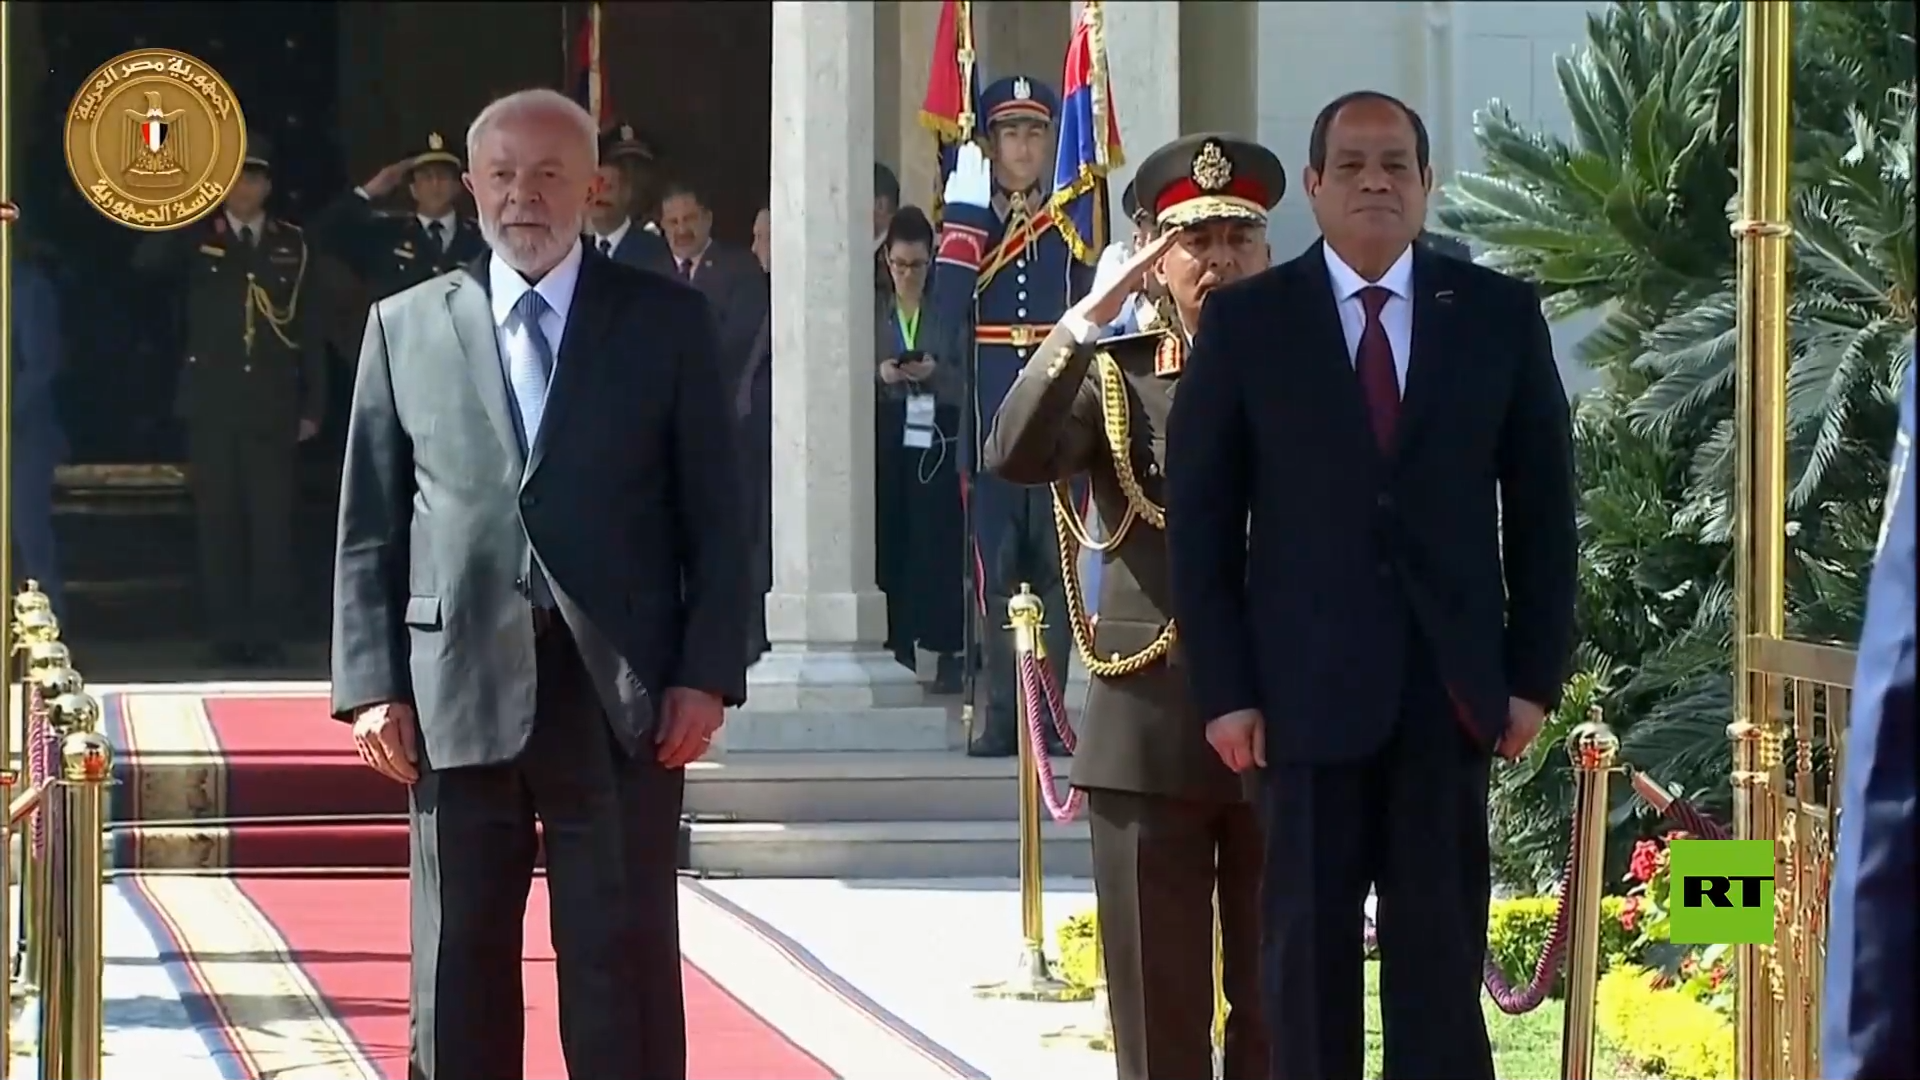 استقبال حافل للرئيس البرازيلي في مصر